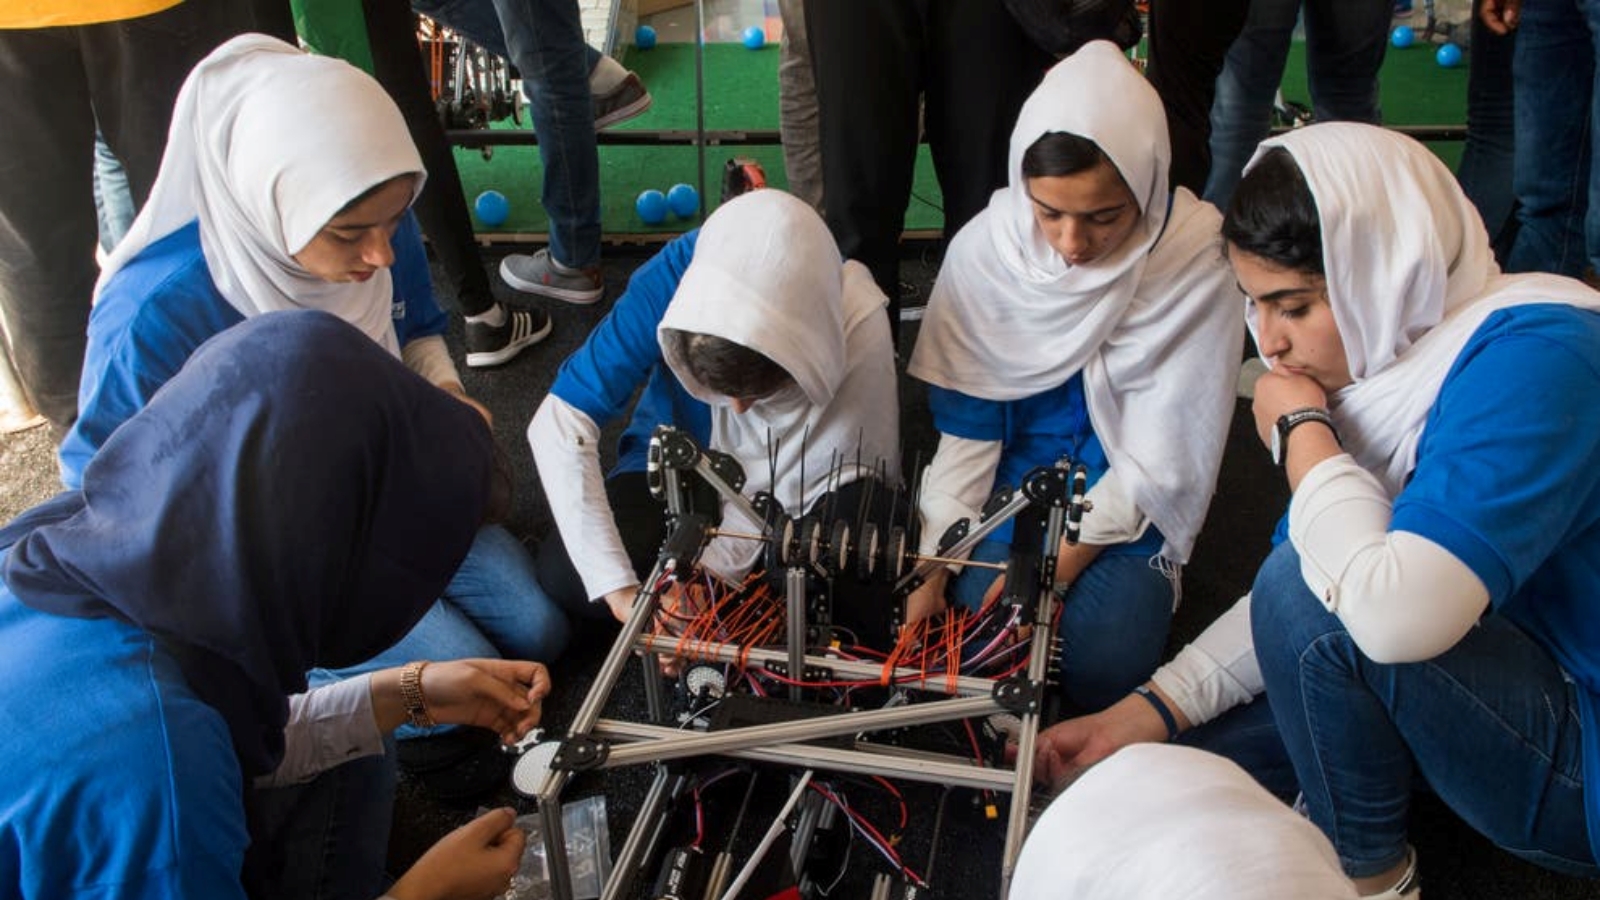 الفتيات في فريق الروبوتات الأفغاني النسائي المعروف باسم 